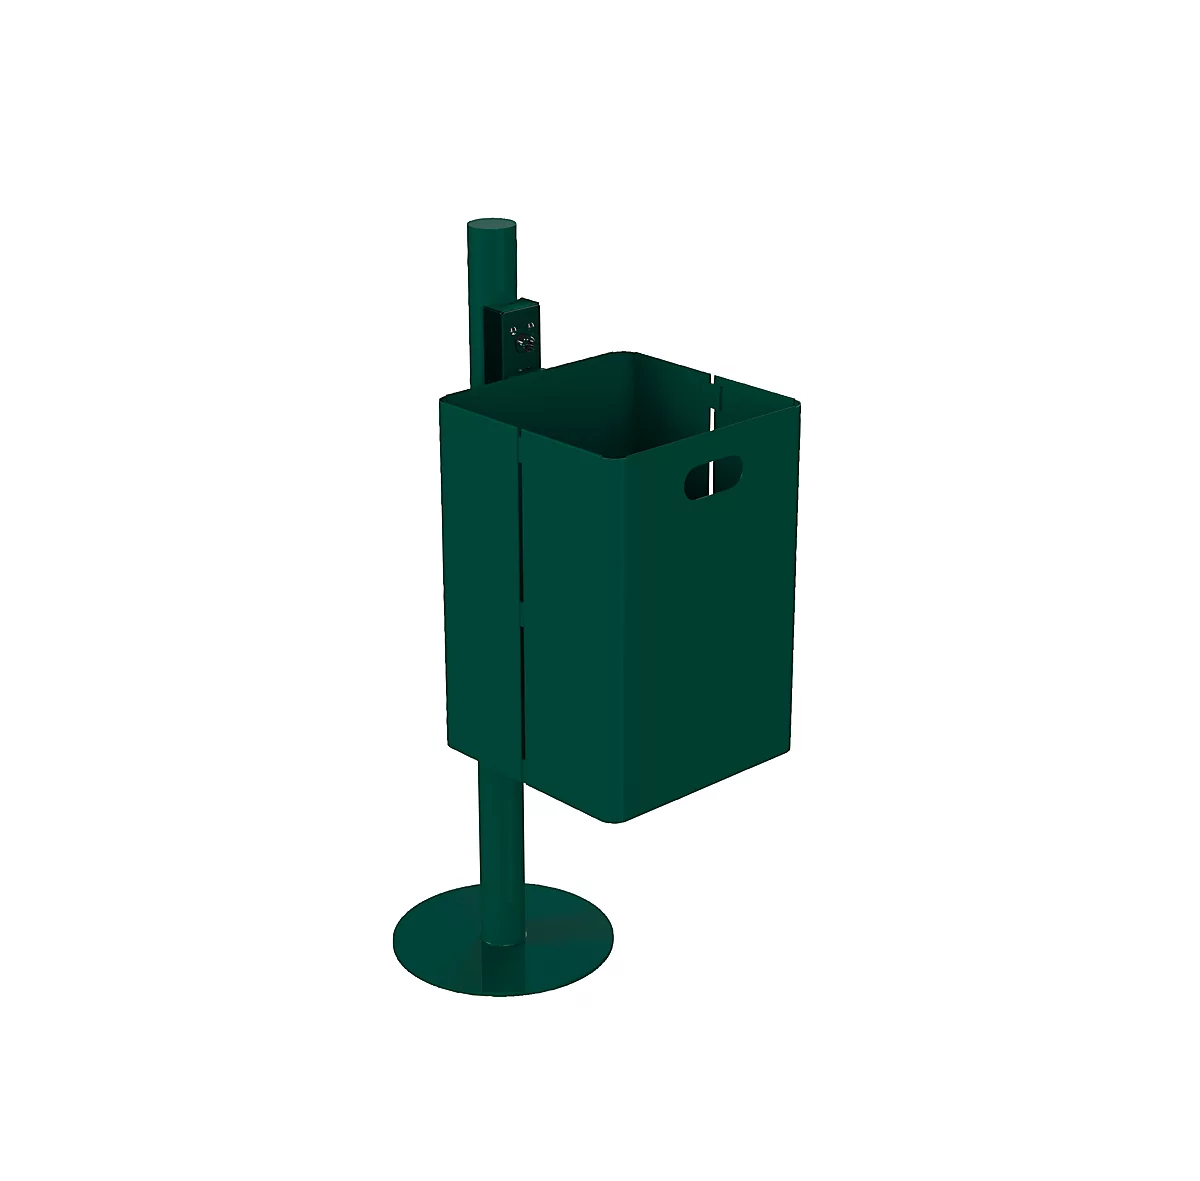 Abfallbehälter mit Haube und integriertem Ascher, grün (RAL 6005)